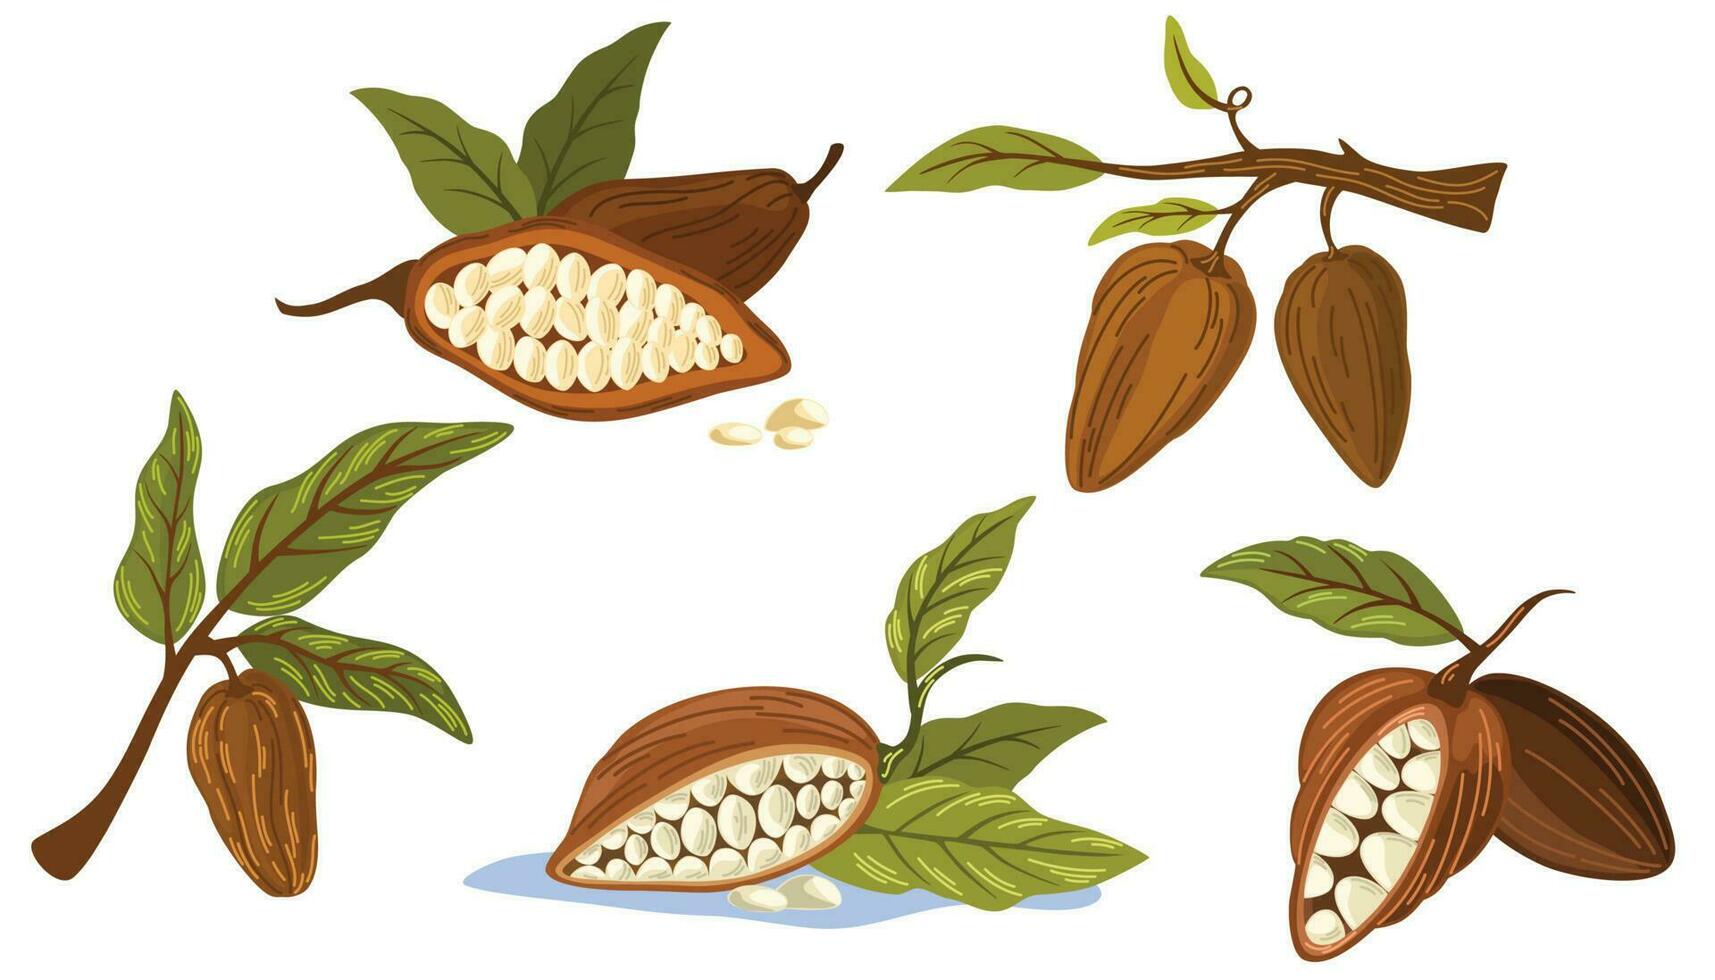 cacao fagioli impostare. cioccolato cacao fagioli, foglie, rami, semi. vettore piatto illustrazione per stampa, menu, pacchi, cartoline e prodotti.